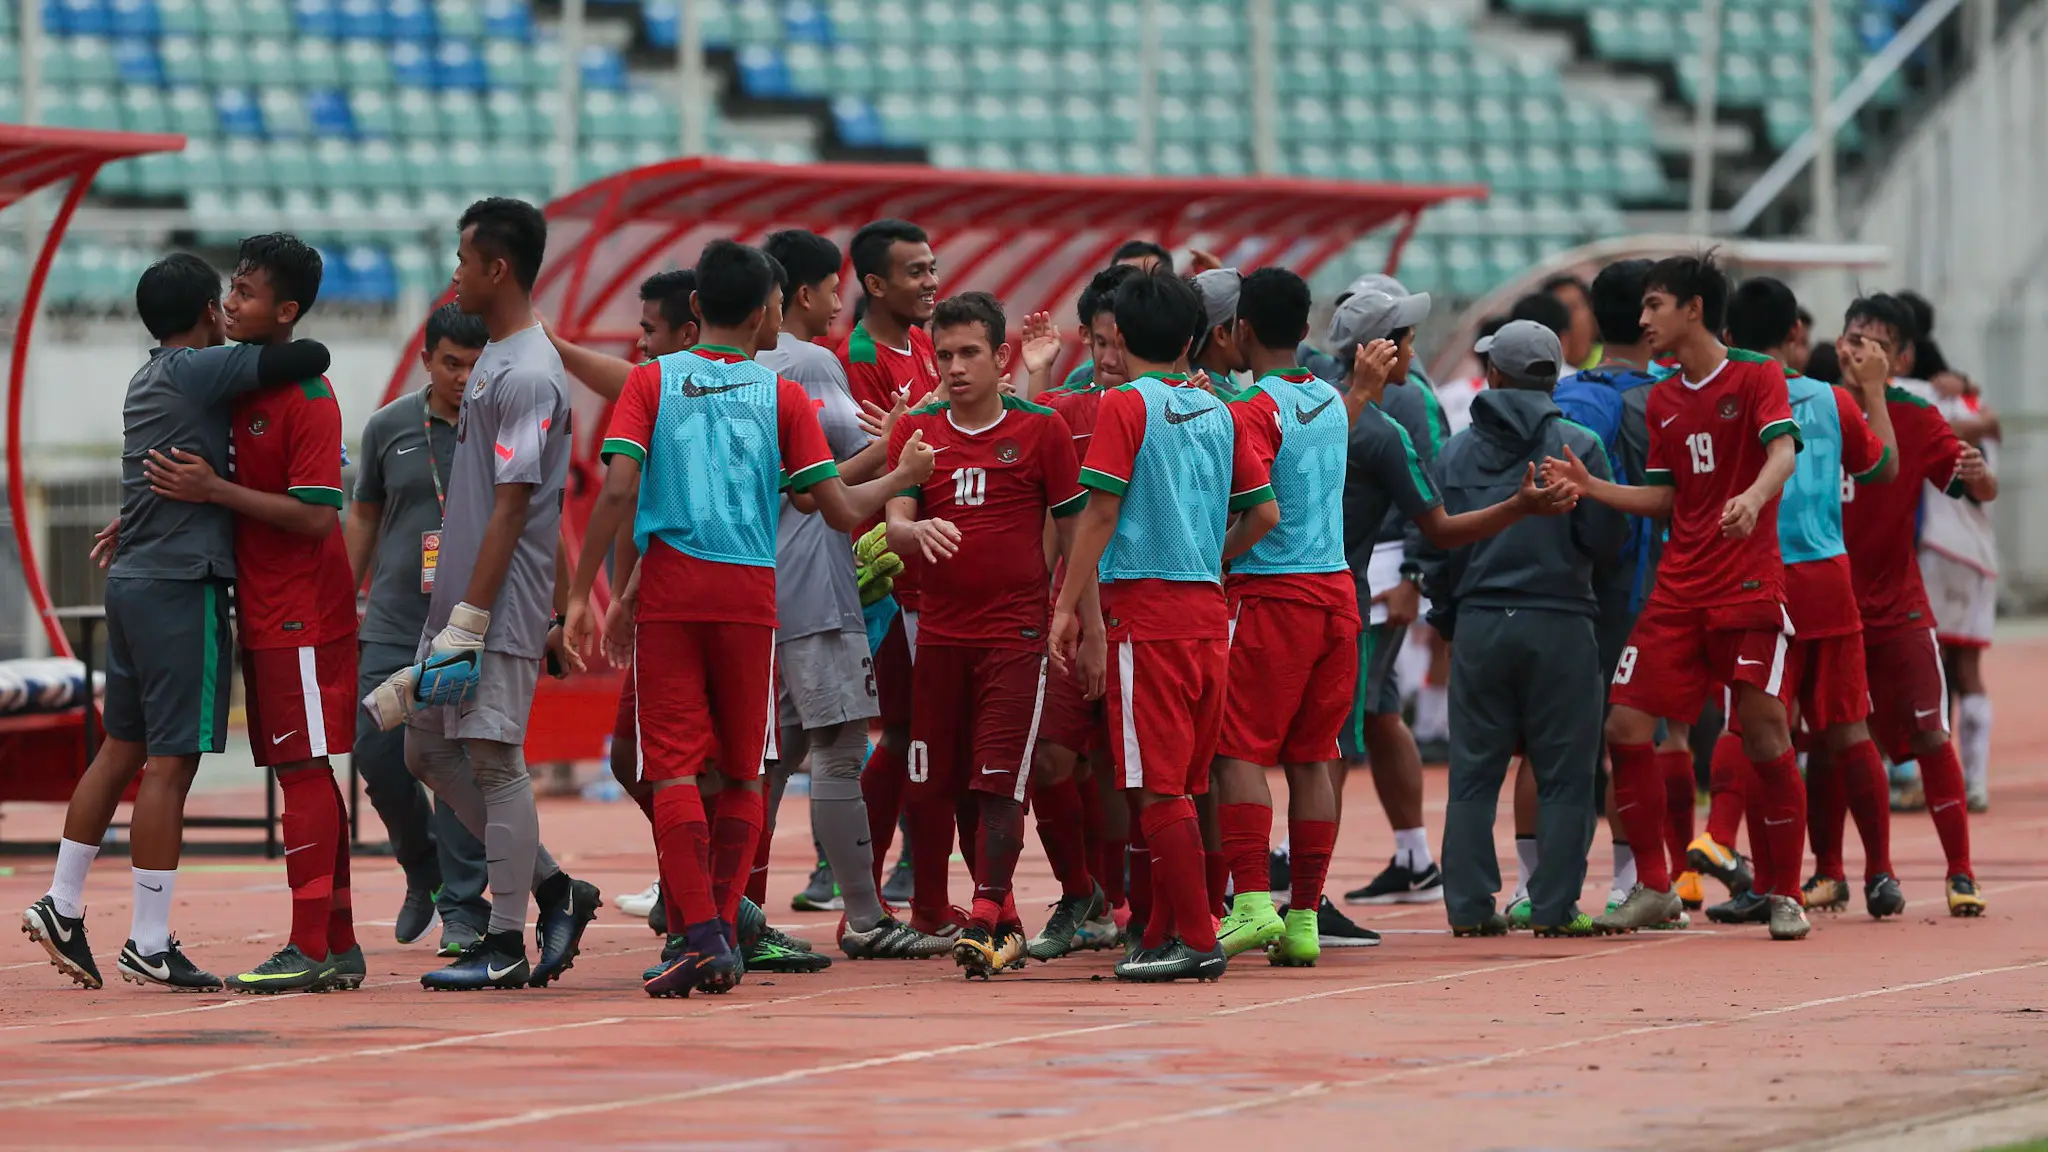 Timnas Indonesia U-19 lolos ke semifinal Piala AFF U-18 2017 setelah menghajar Brunei 8-0 di Thuwunna Stadium, Rabu (13/9/2017). (Liputan6.com/Yoppy Renato)